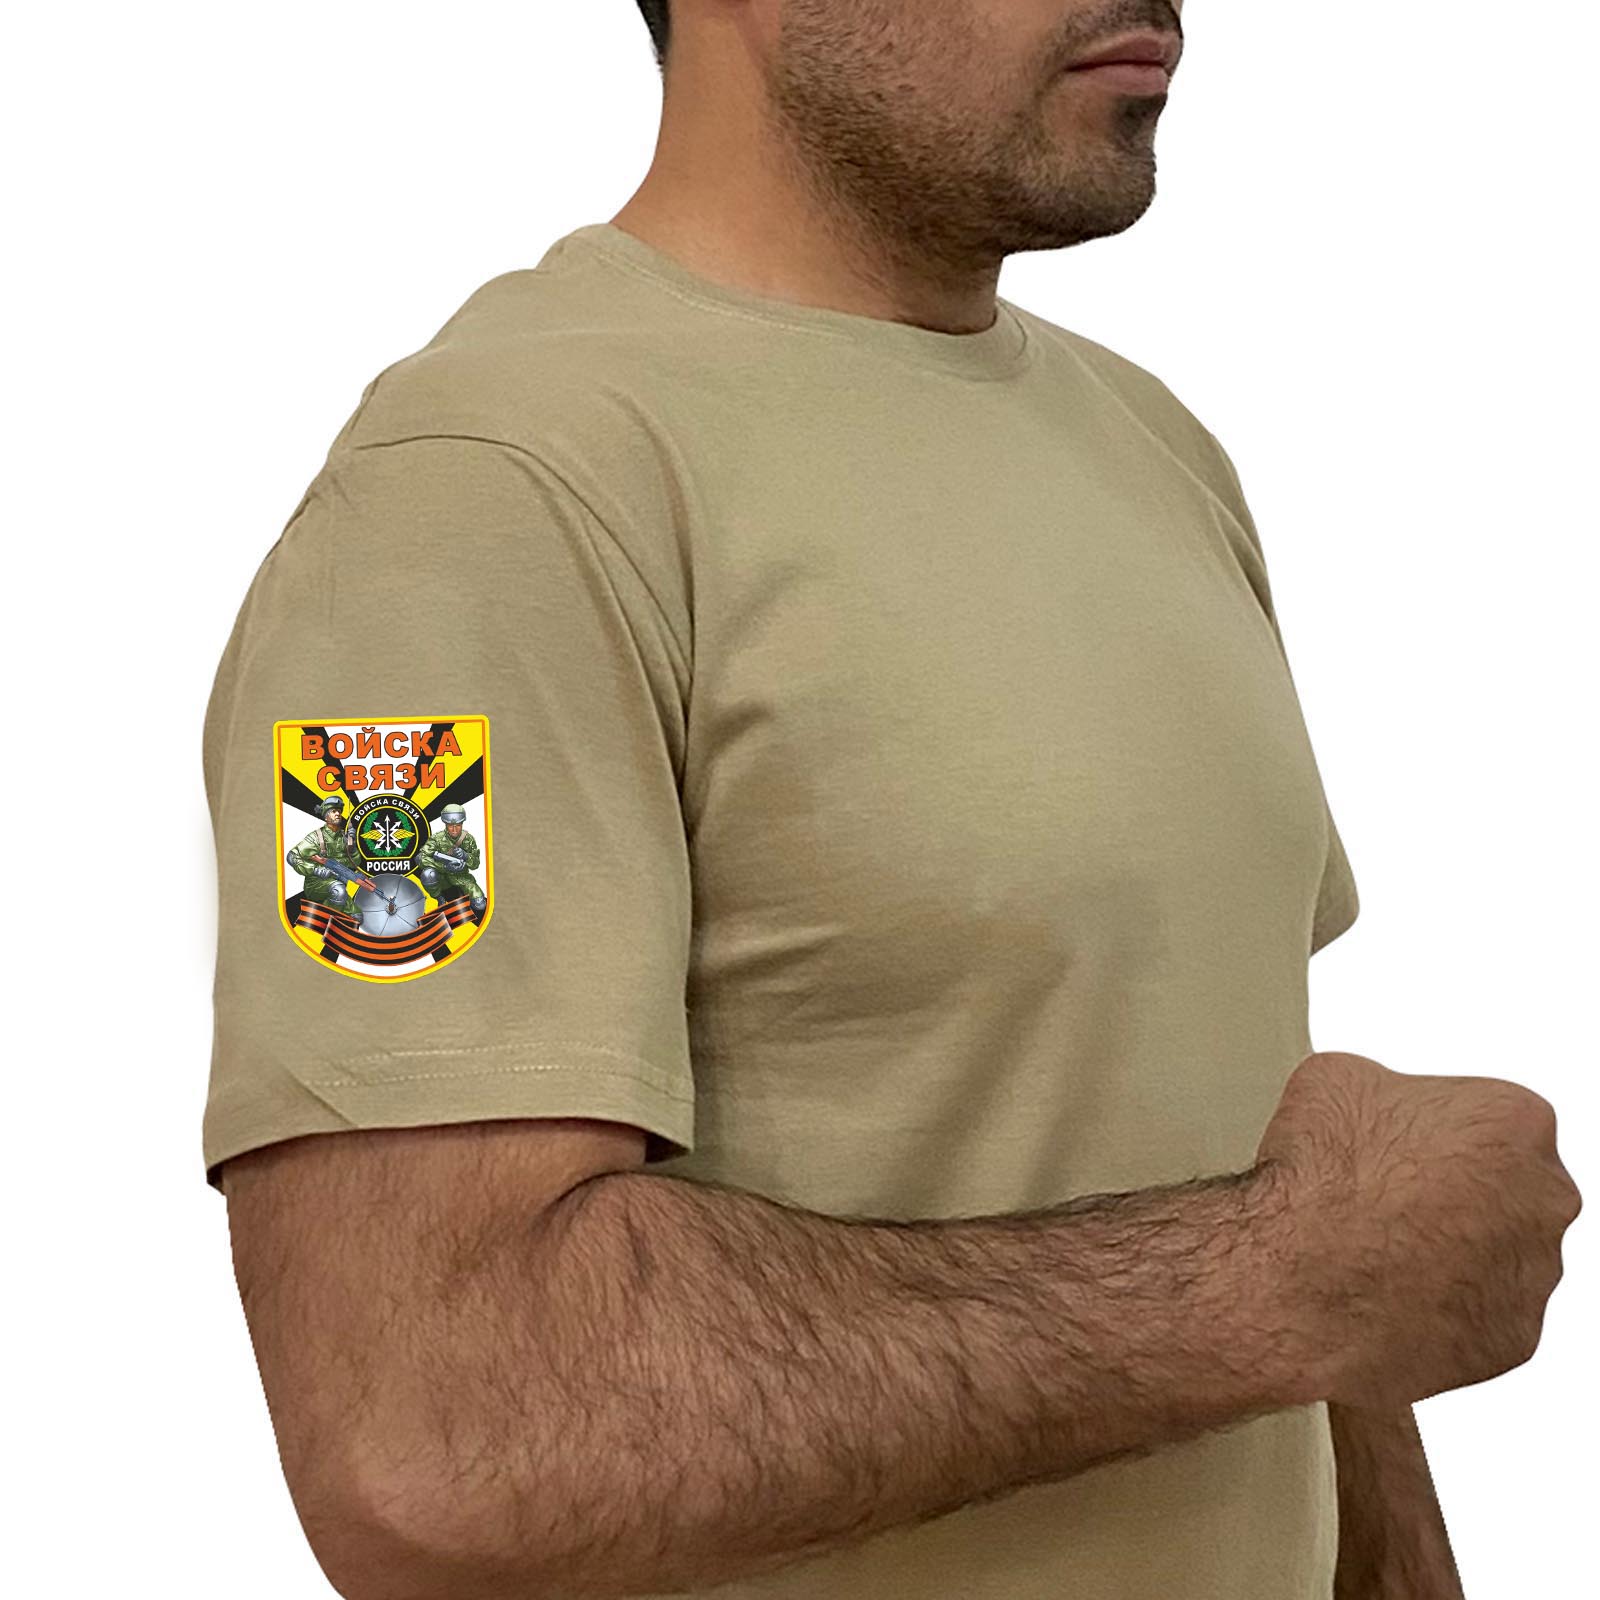 Купить хлопковую футболку хаки-песок с термотрансфером Войска Связи выгодно